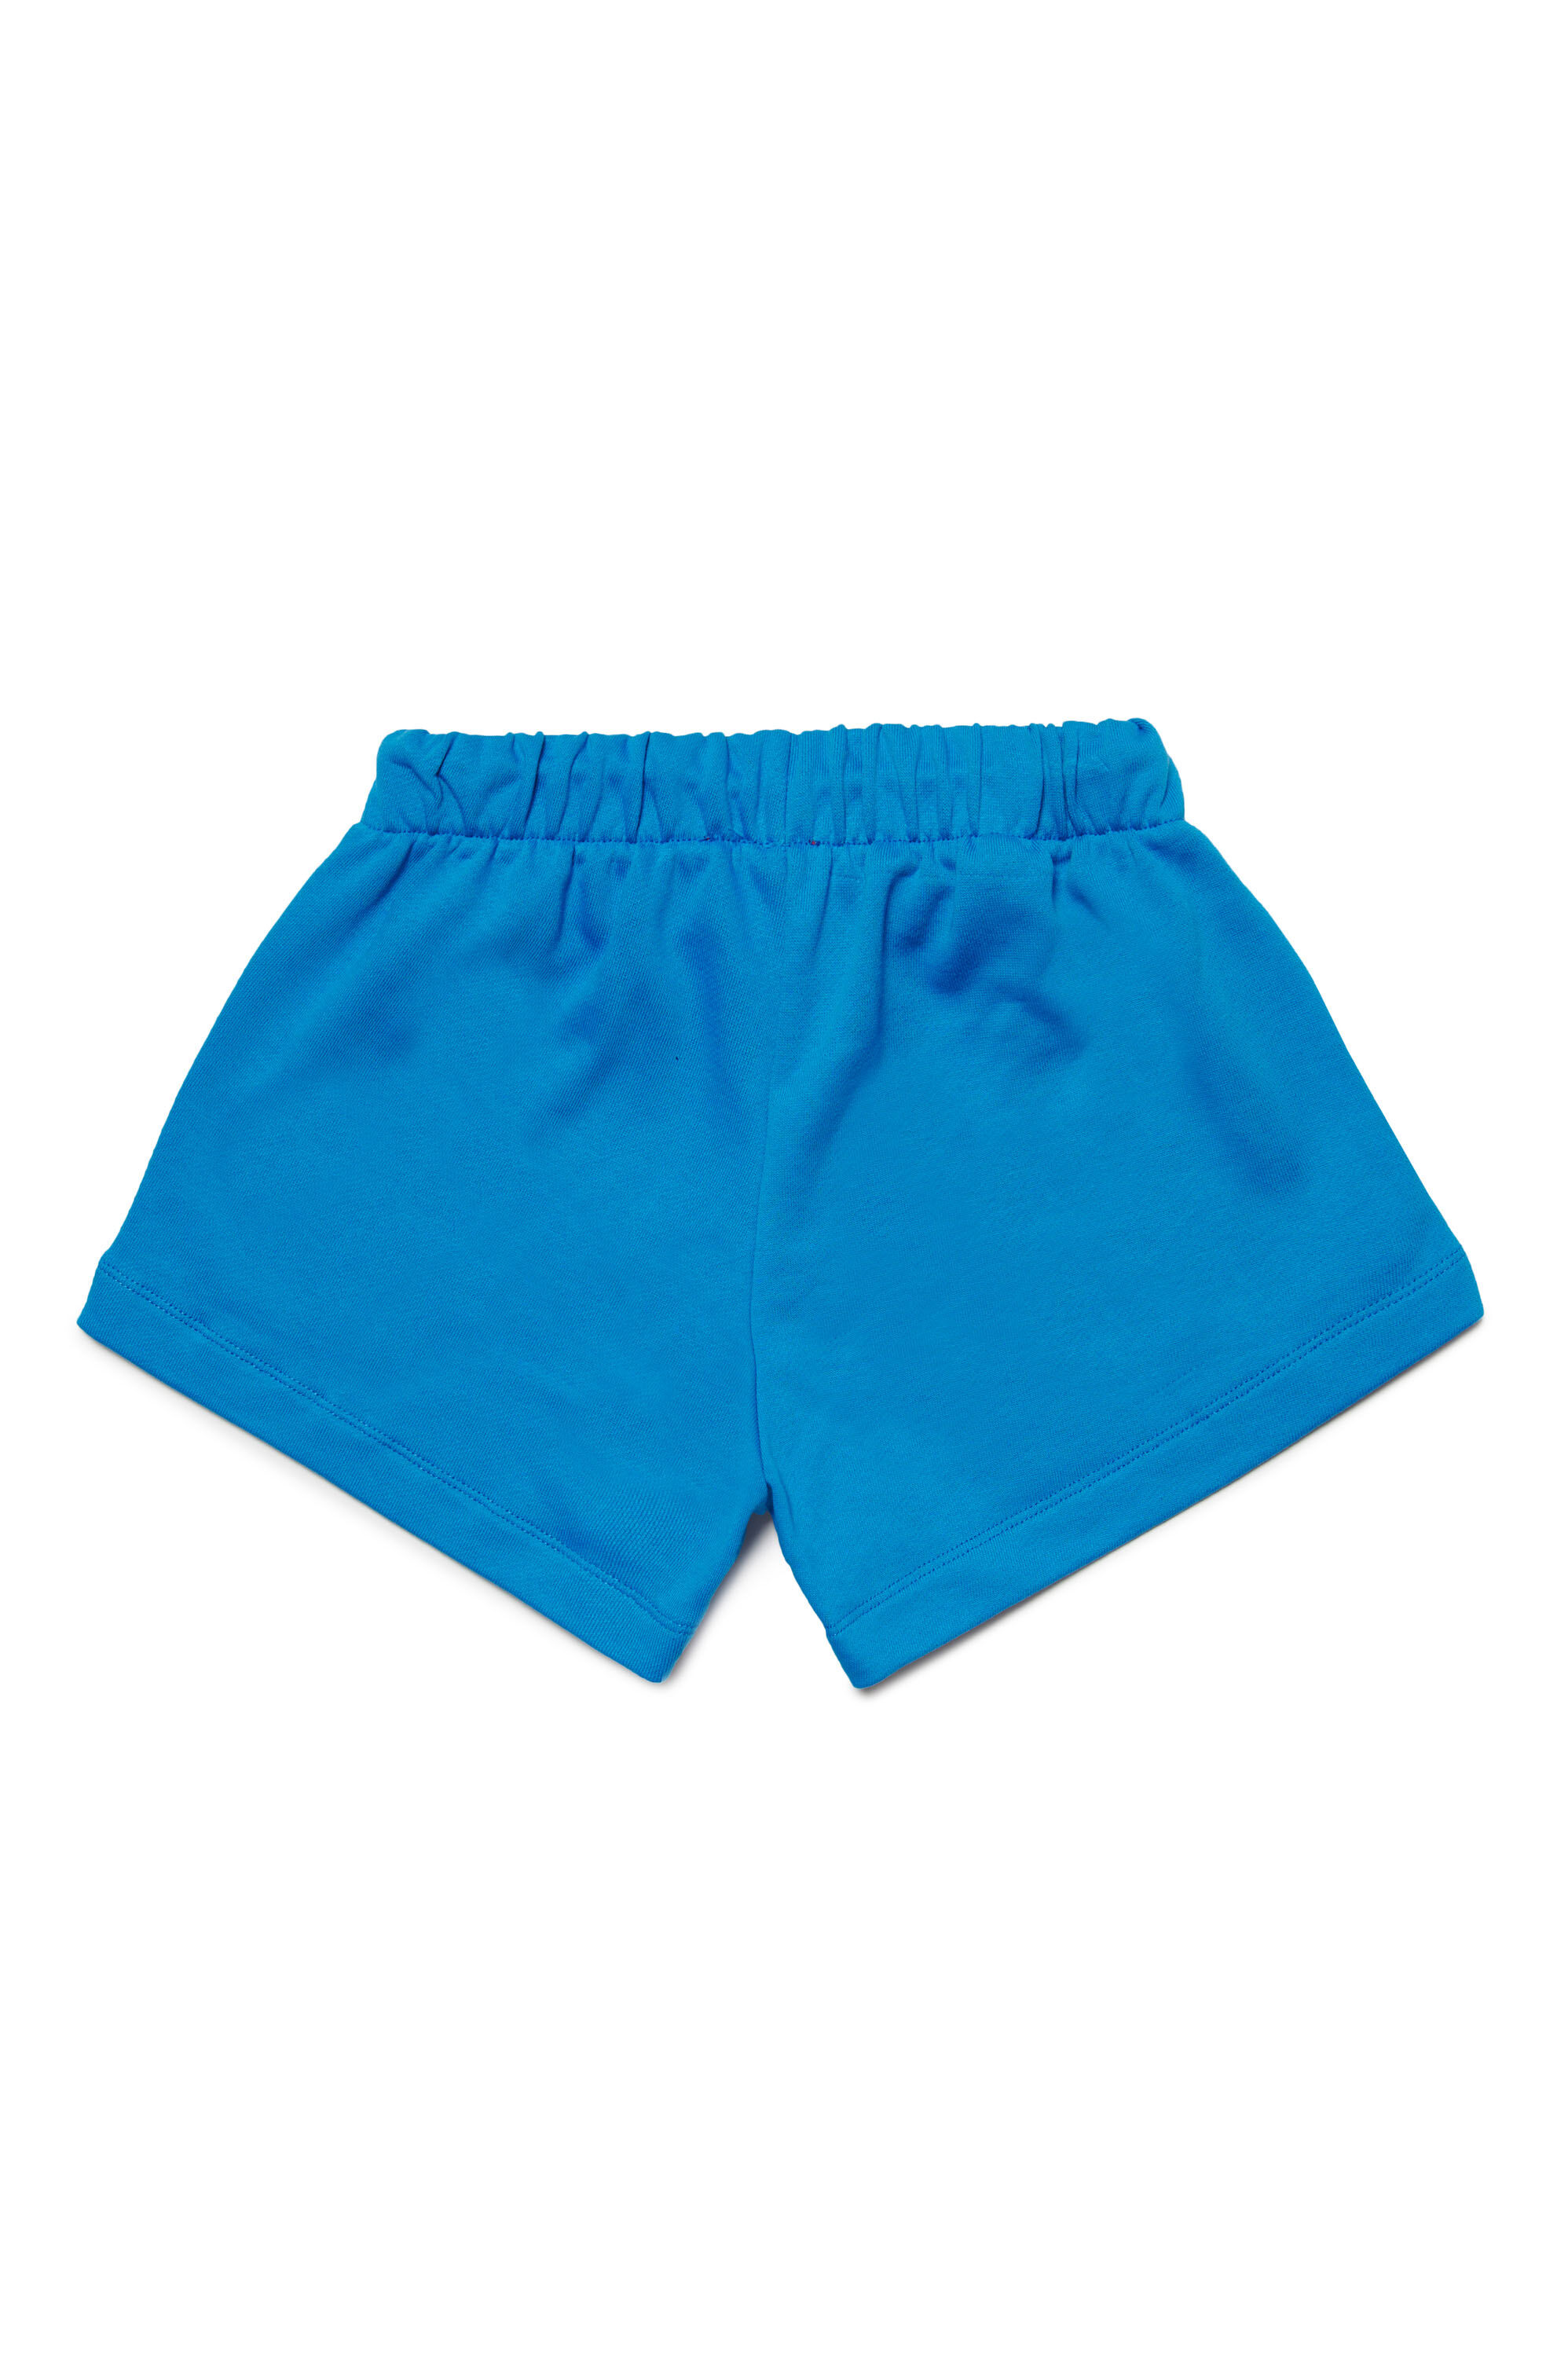 Diesel - PAGLIFE, Mujer Pantalones cortos deportivos con logotipo Oval D acolchado in Azul marino - Image 2